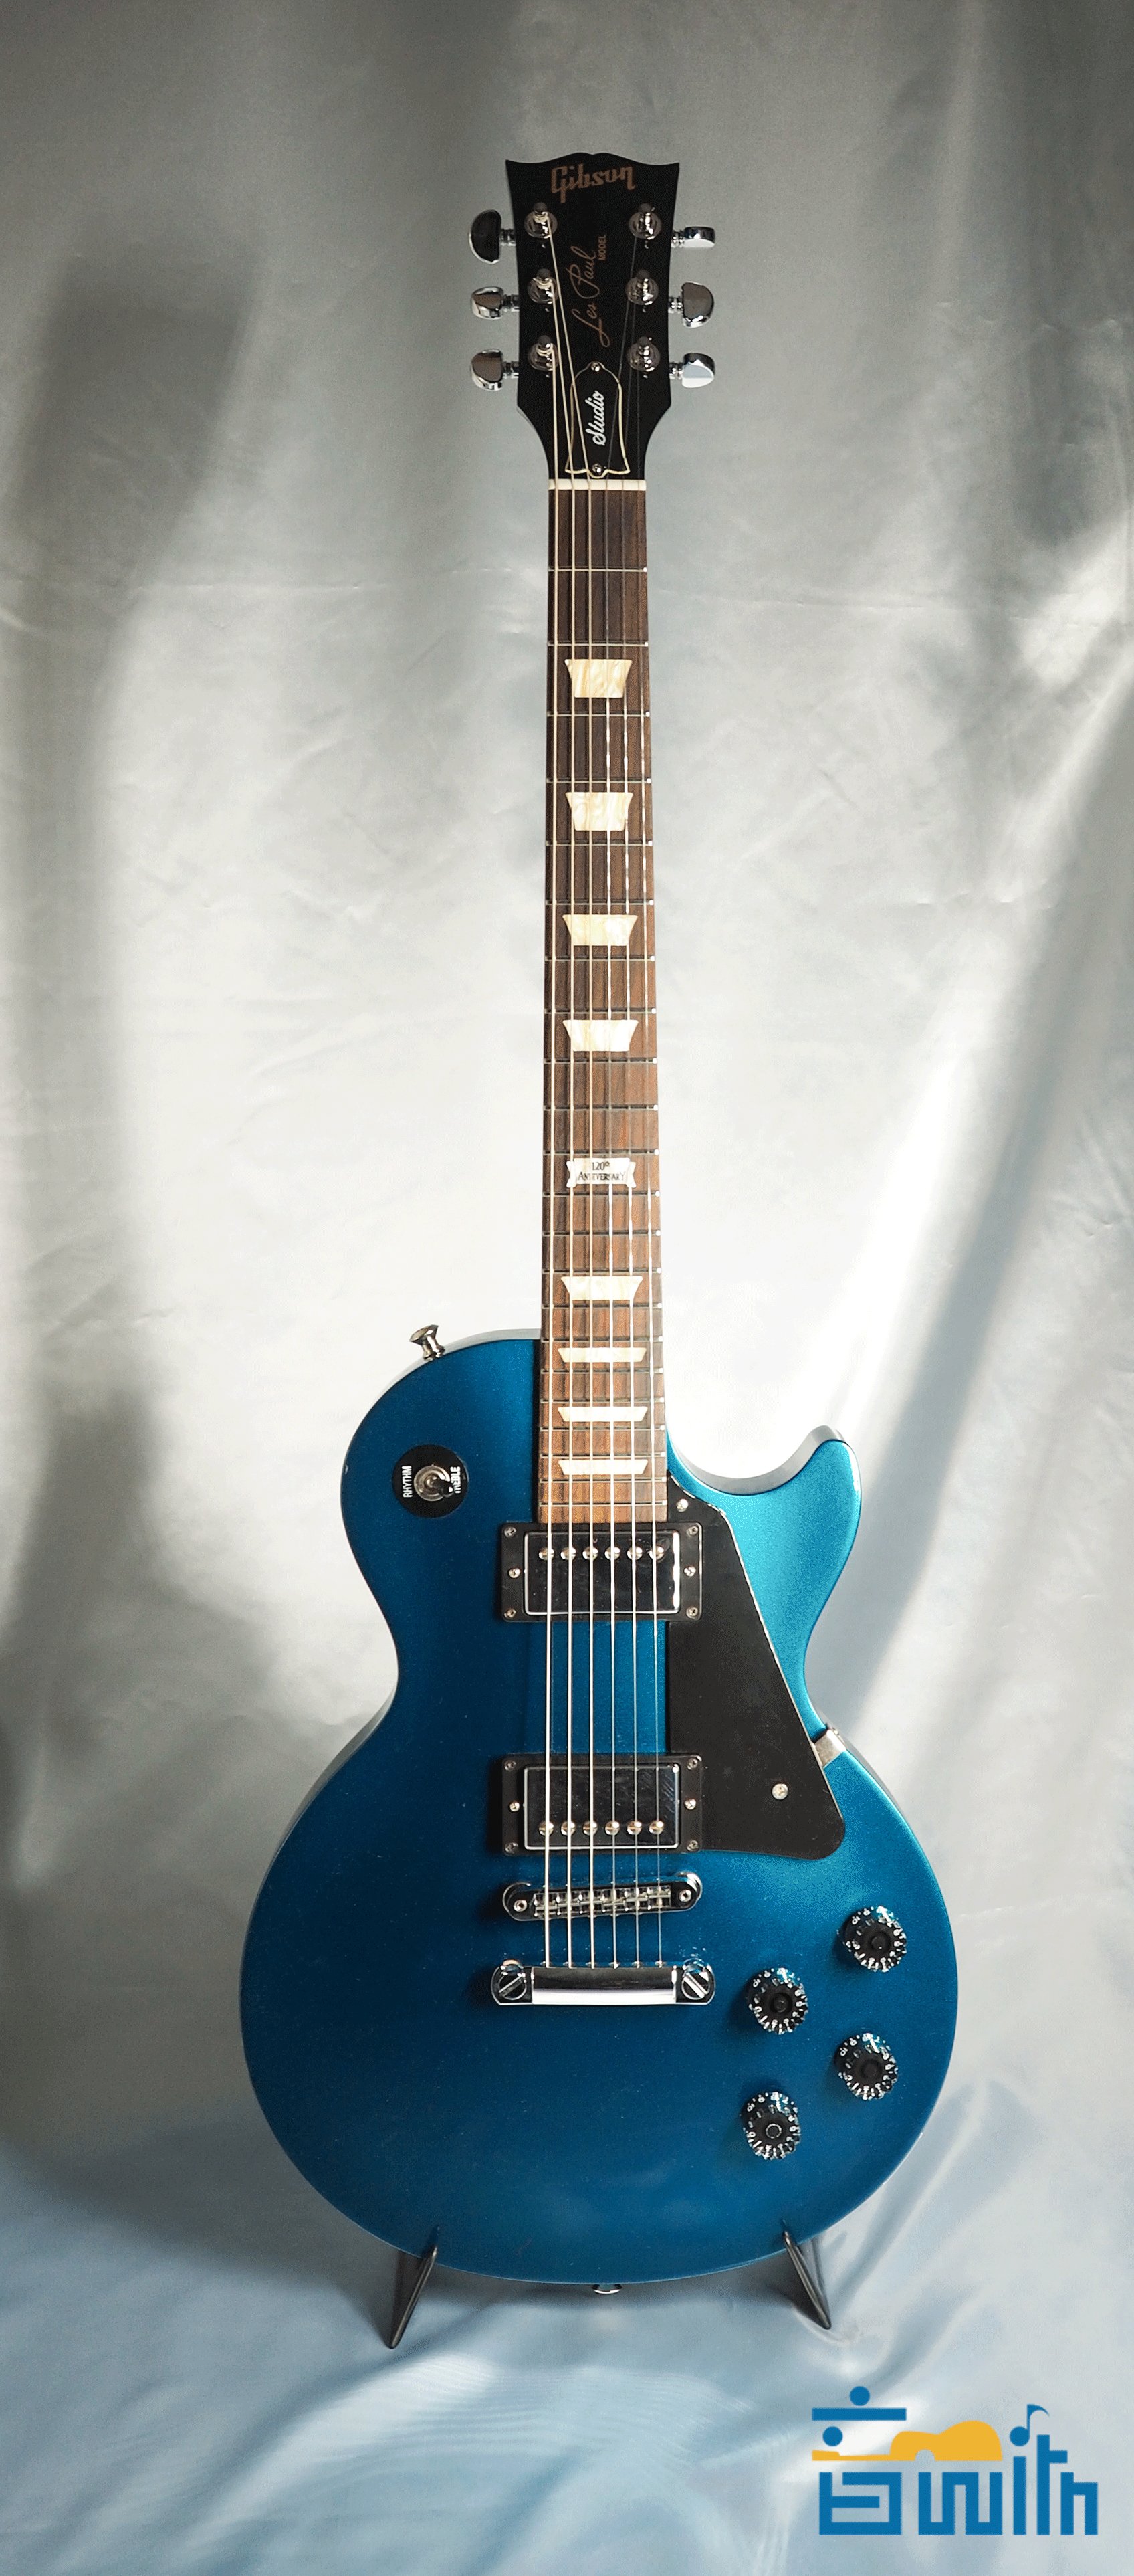 تويتر 音with على تويتر ラメが入ったギターはテンションあがります 僕の青いギターかっこいい選手権 T Co Koqucv4fq2